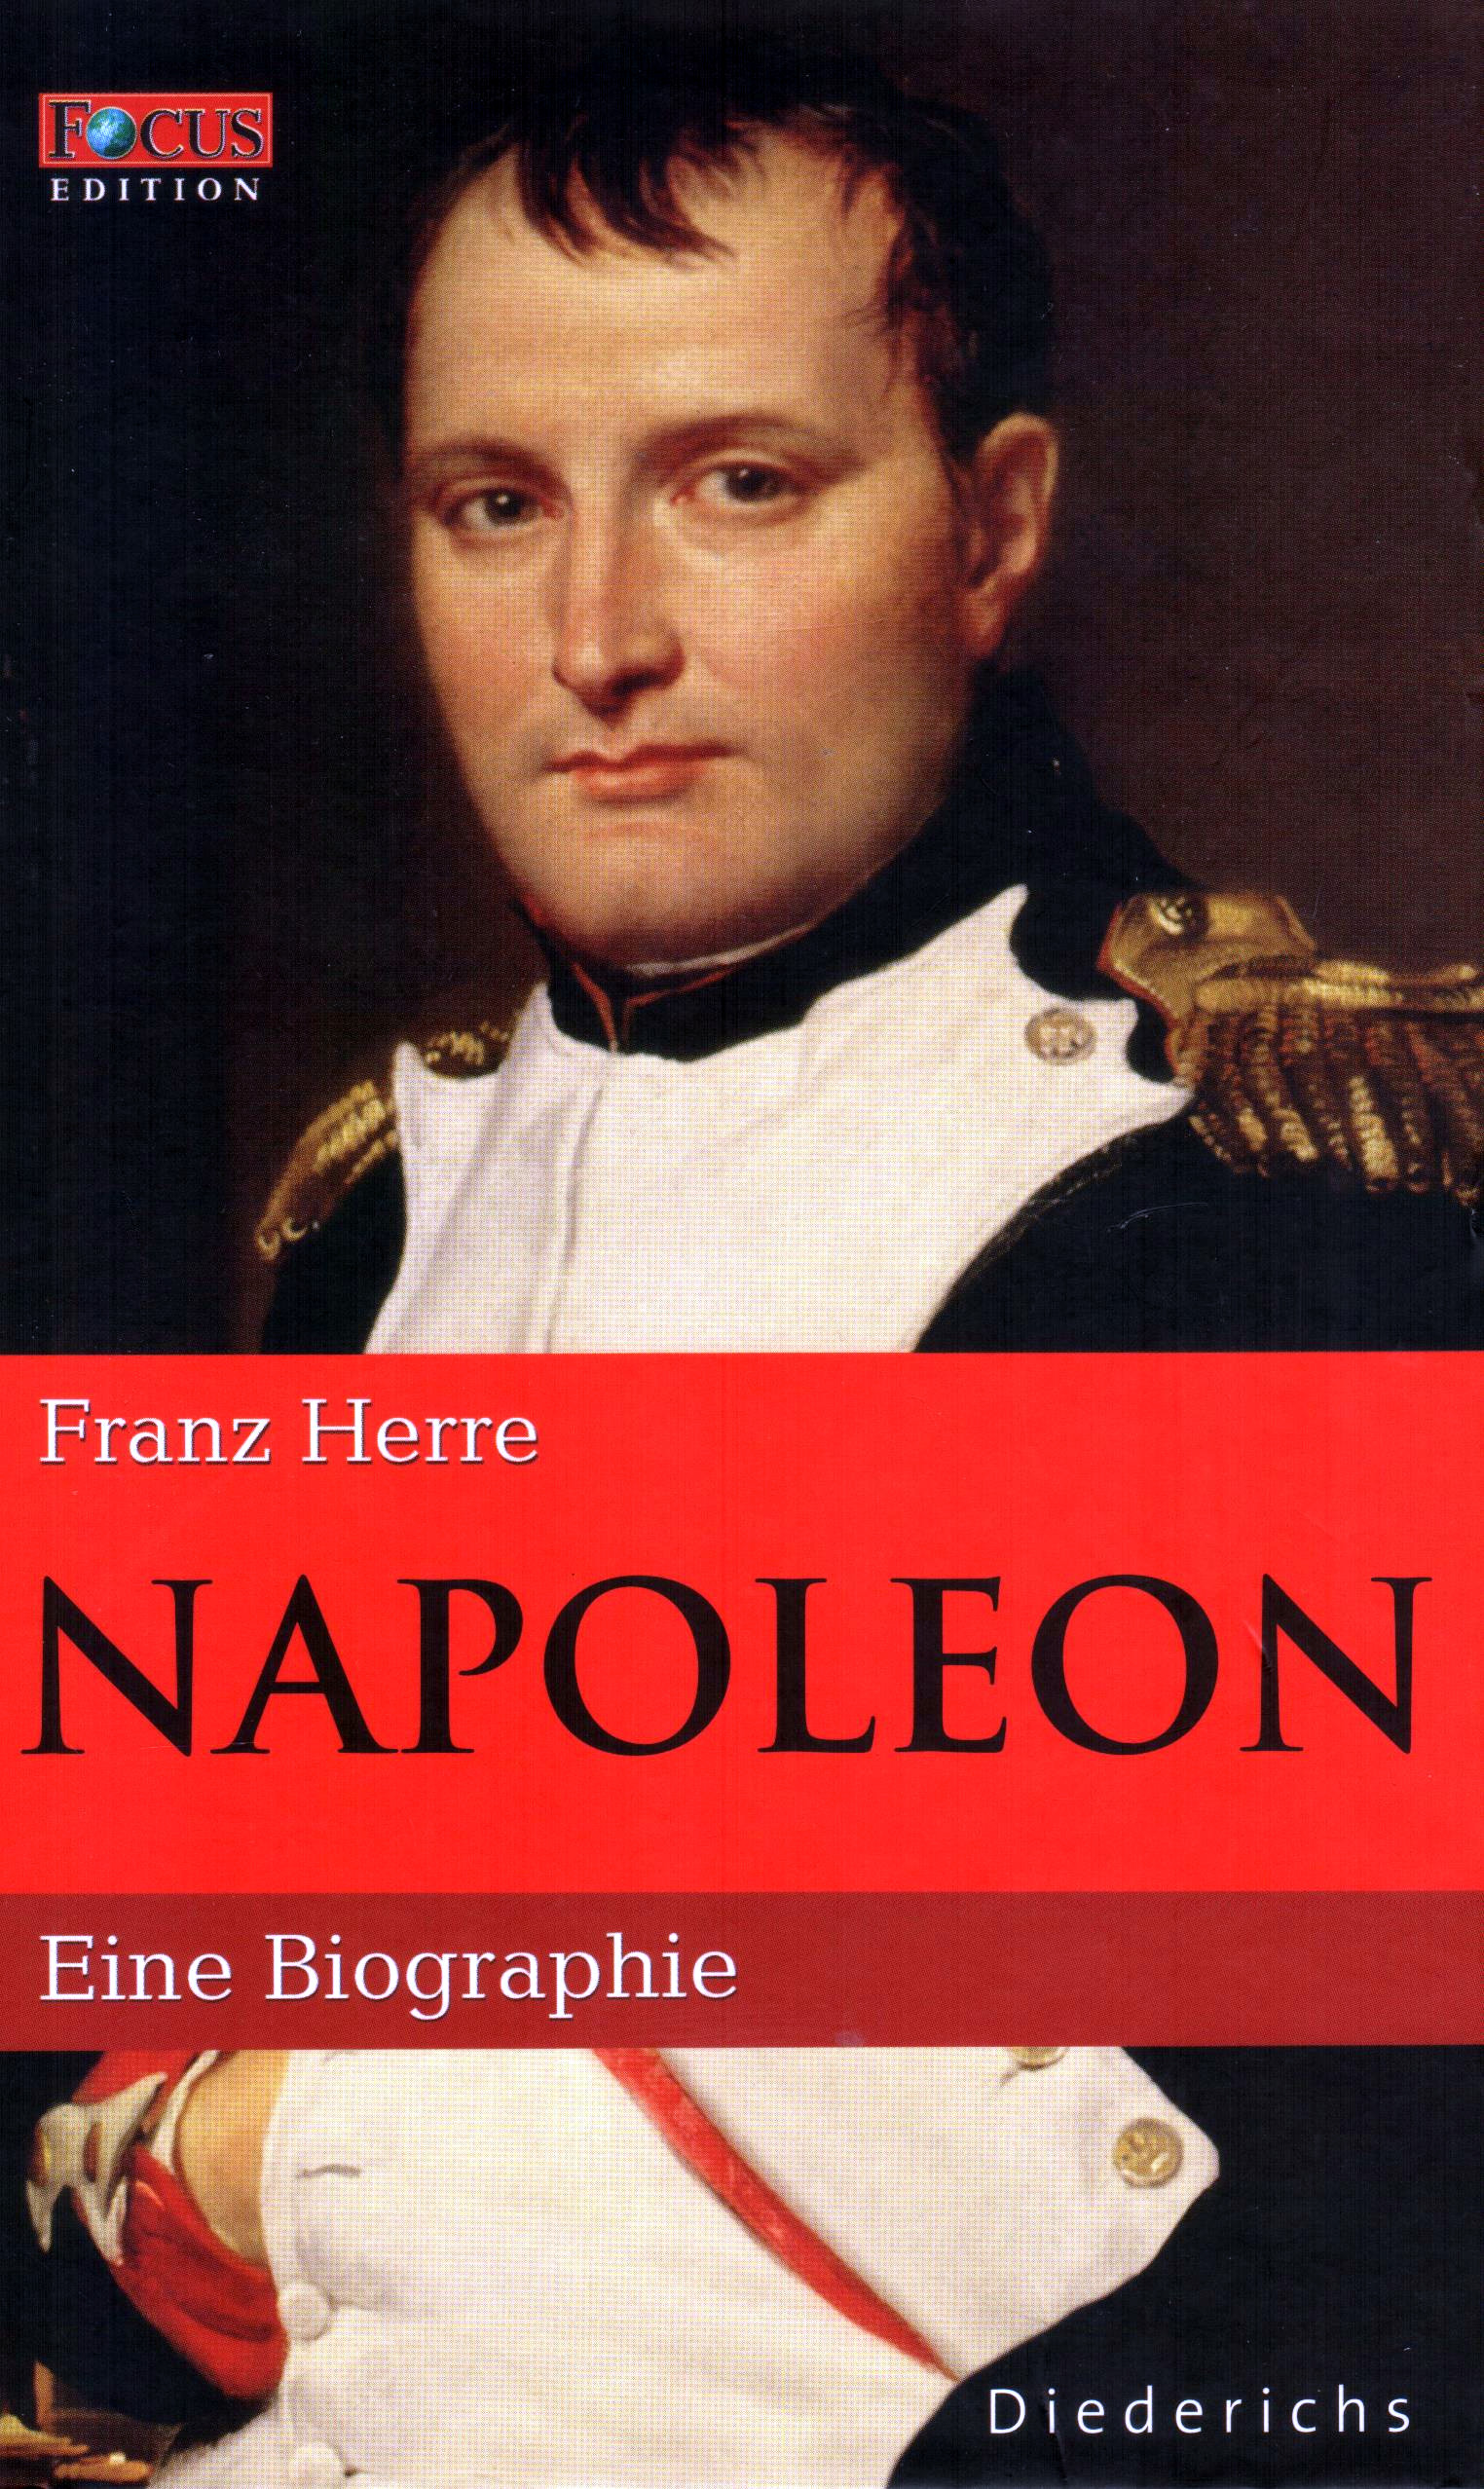 FOCUS Edition (Band 1) Napoleon – Eine Biographie